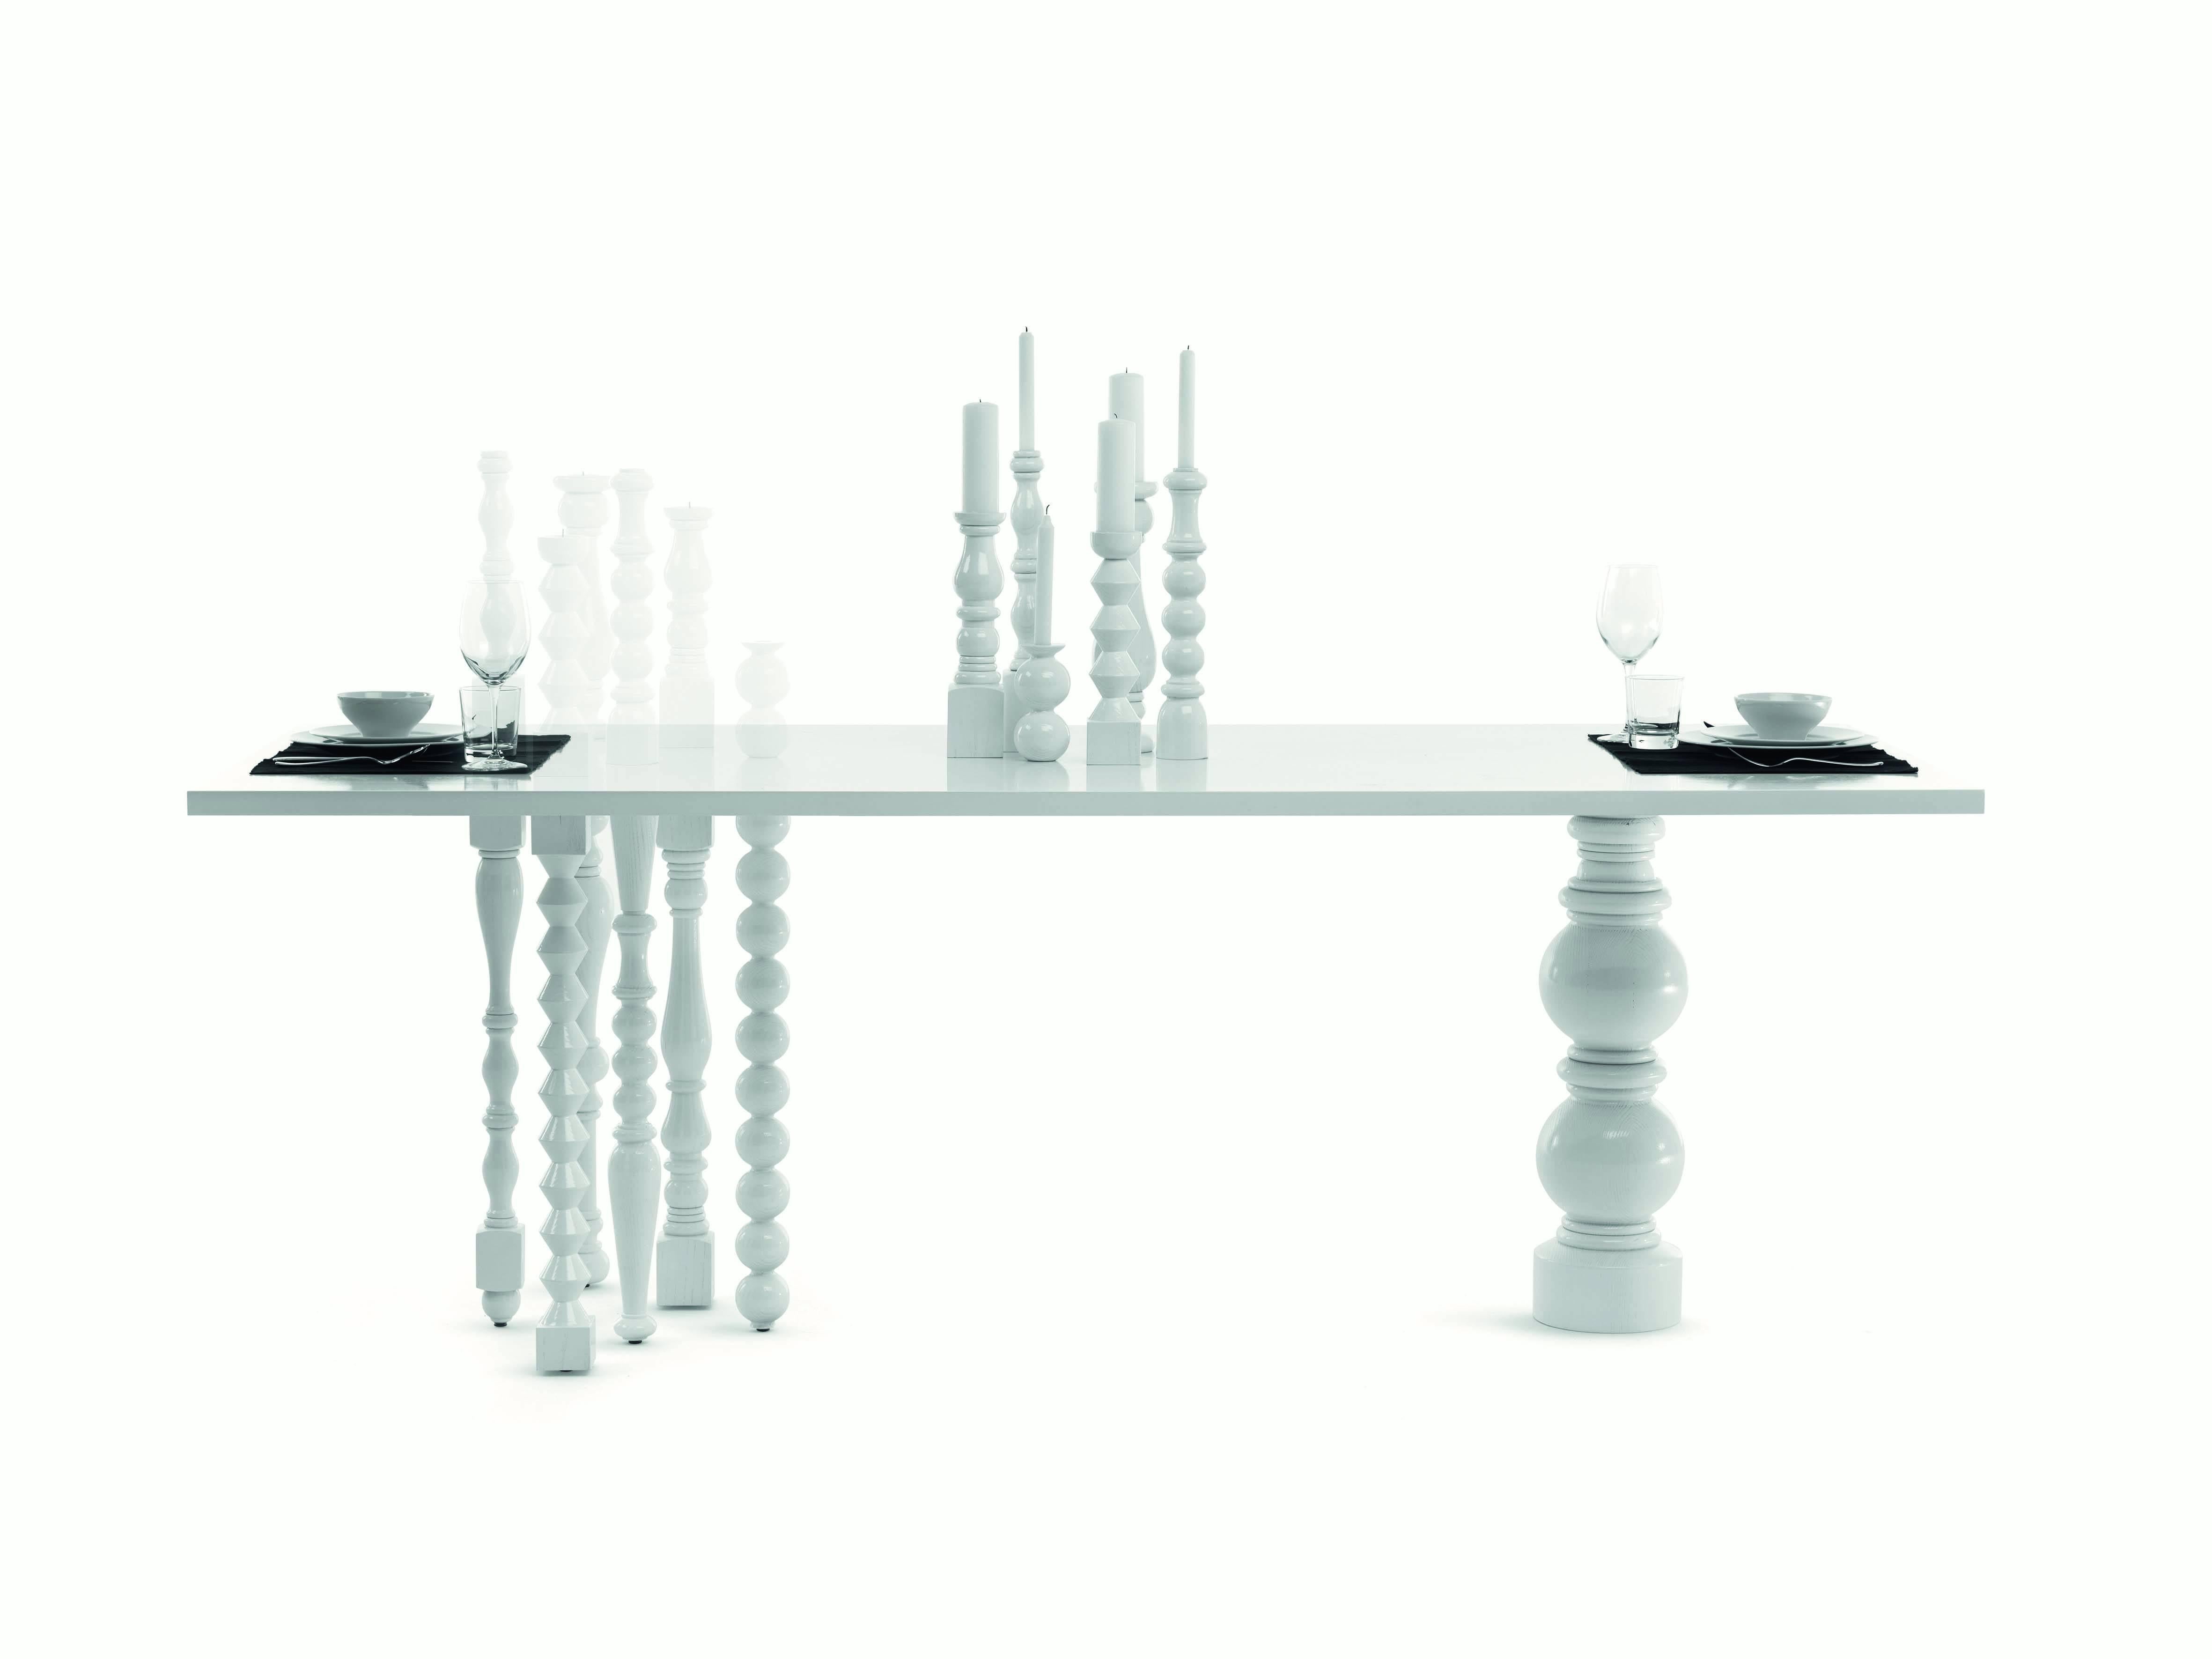 Der Tisch Lies wurde von Annabeth Philips Designern für die Marke Mogg entworfen. Eschenholz Tisch mit Beinen und sieben Kerzenhalter in gedrehten massiv. Erhältlich in glänzendem Weiß RAL 9016 direkt.

Sehr spezielles Design für diesen Tisch,